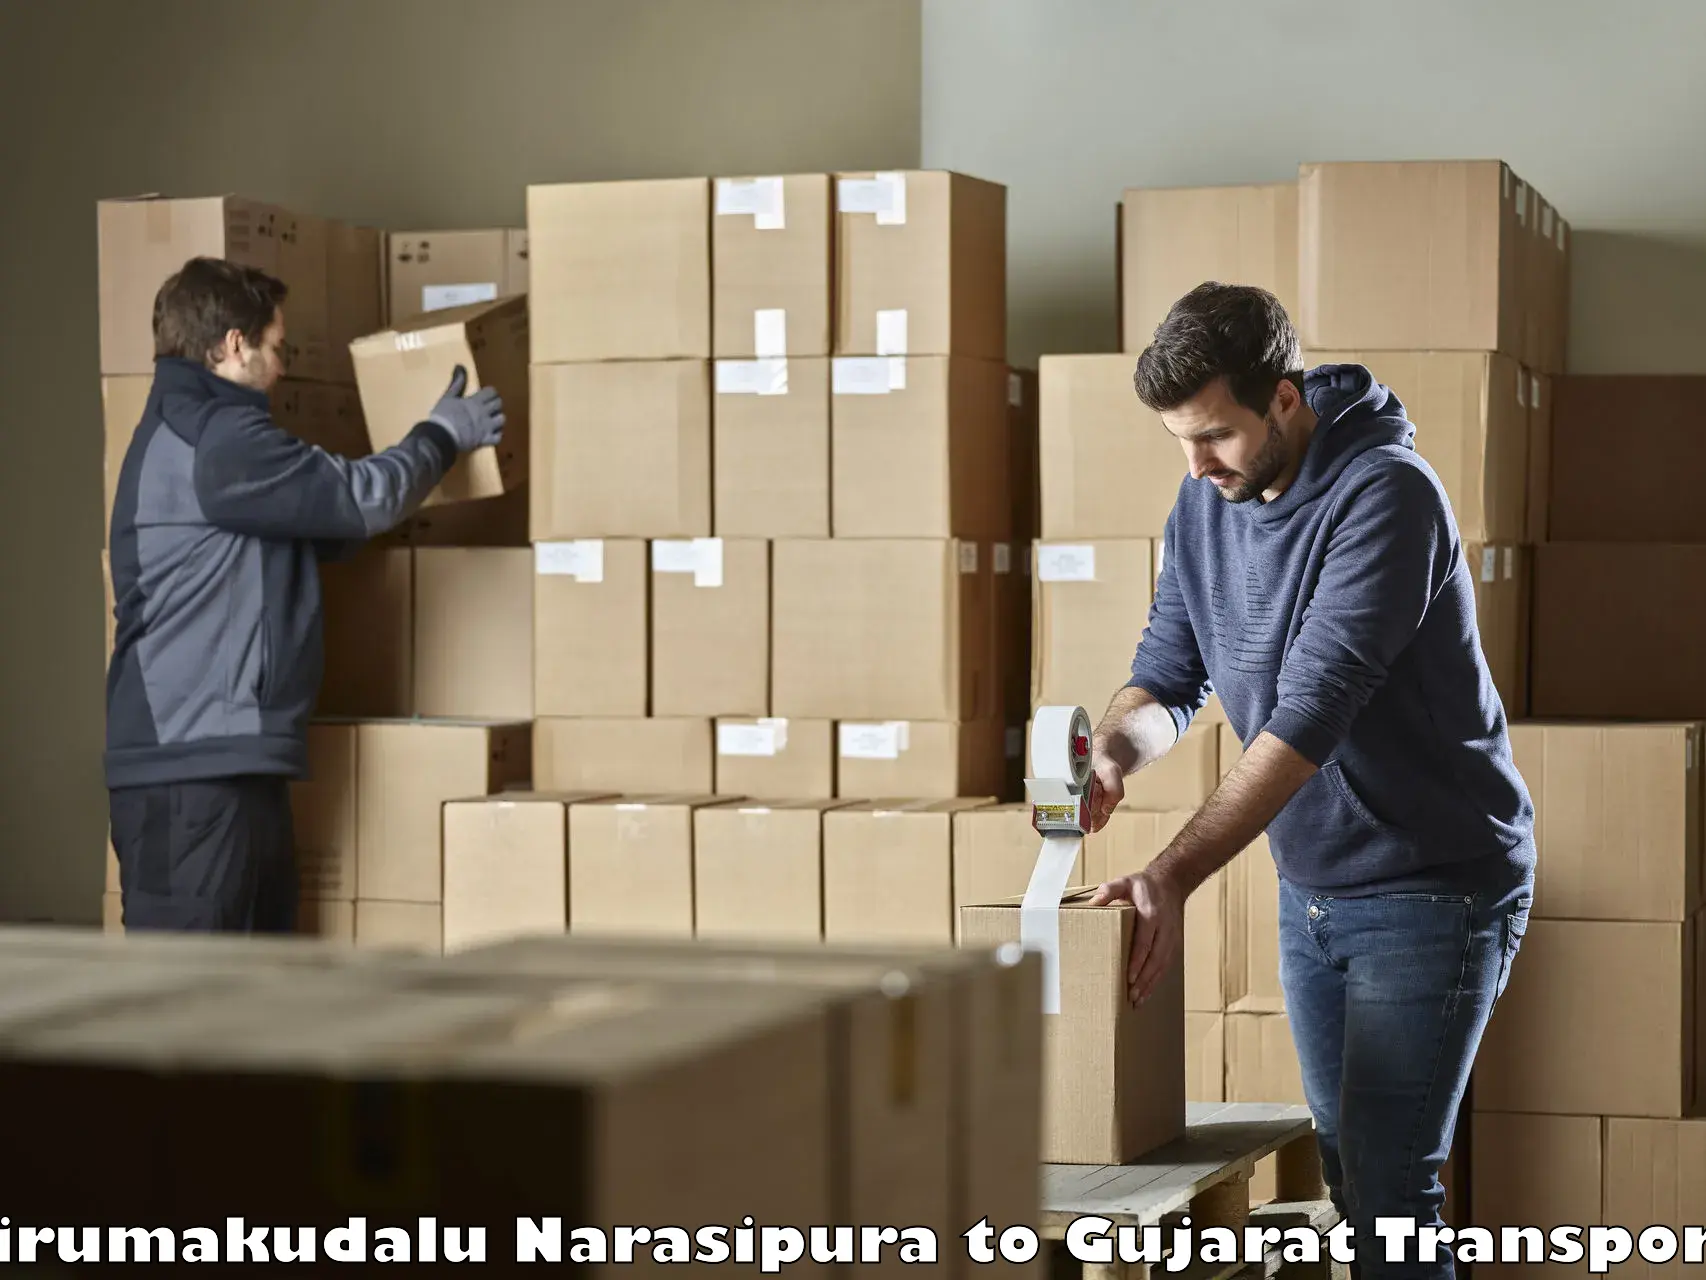 Furniture transport service in Tirumakudalu Narasipura to Nadiad